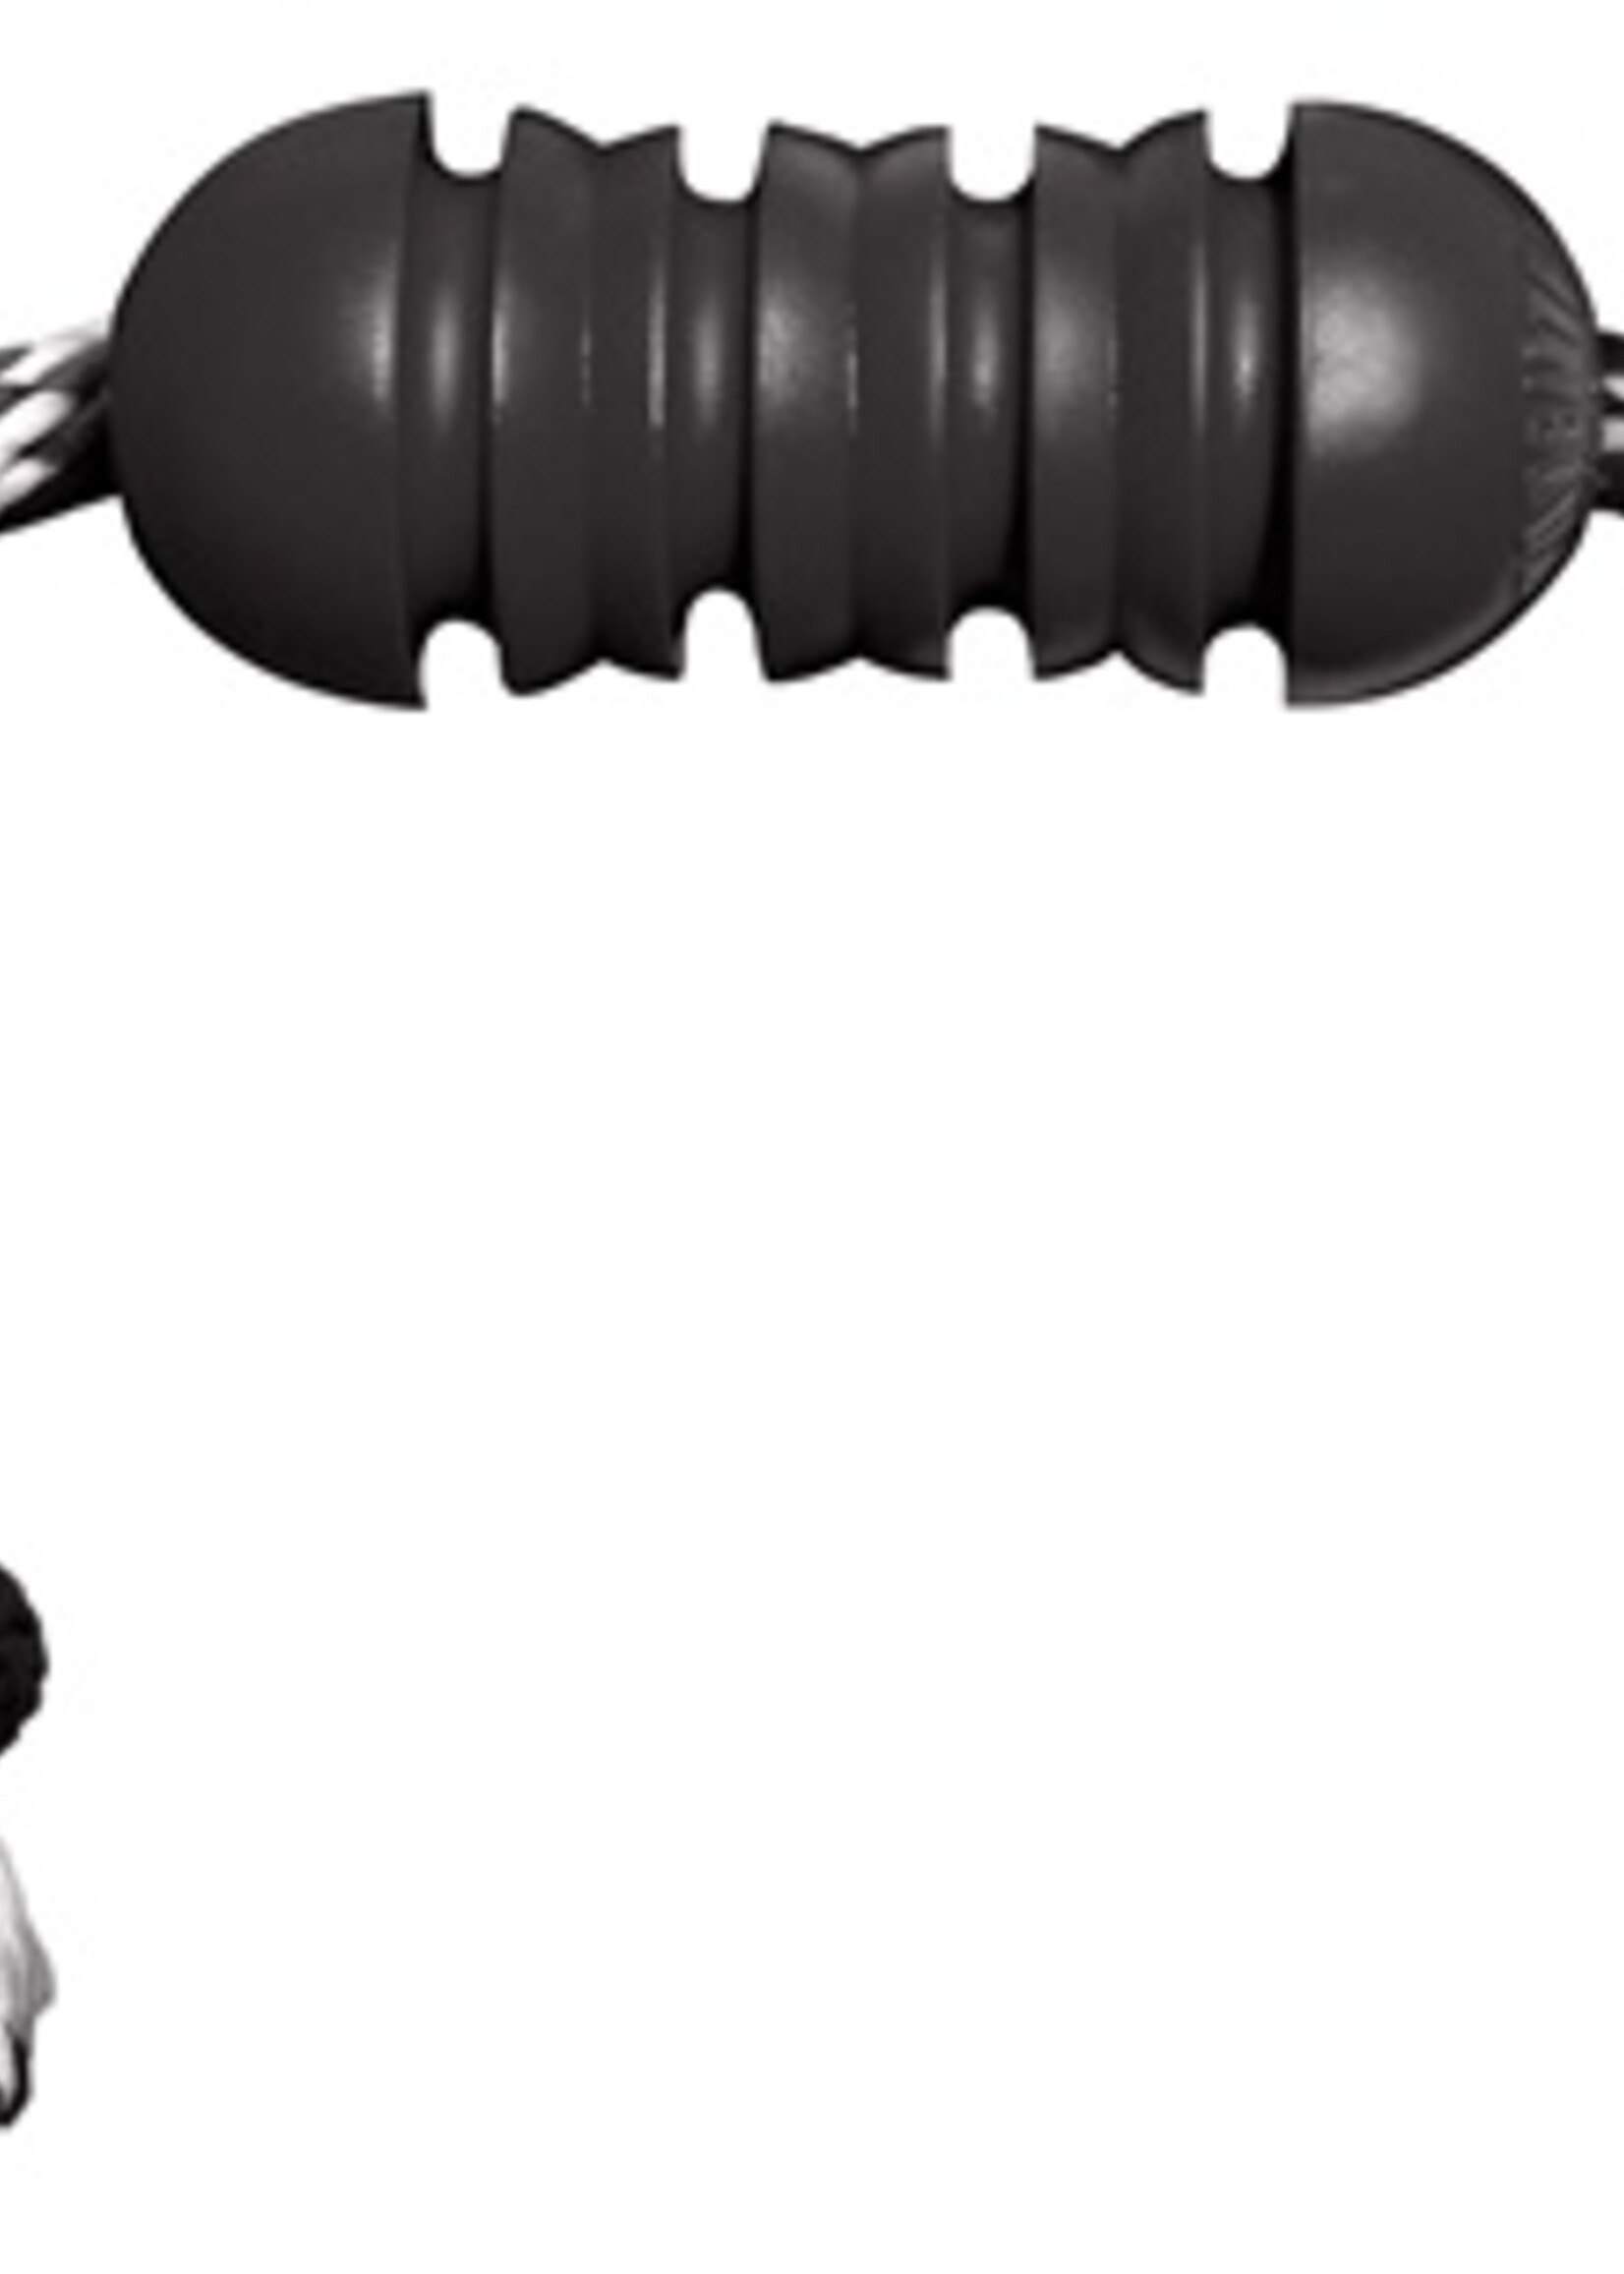 Kong Kong extreme dental met touw zwart / wit